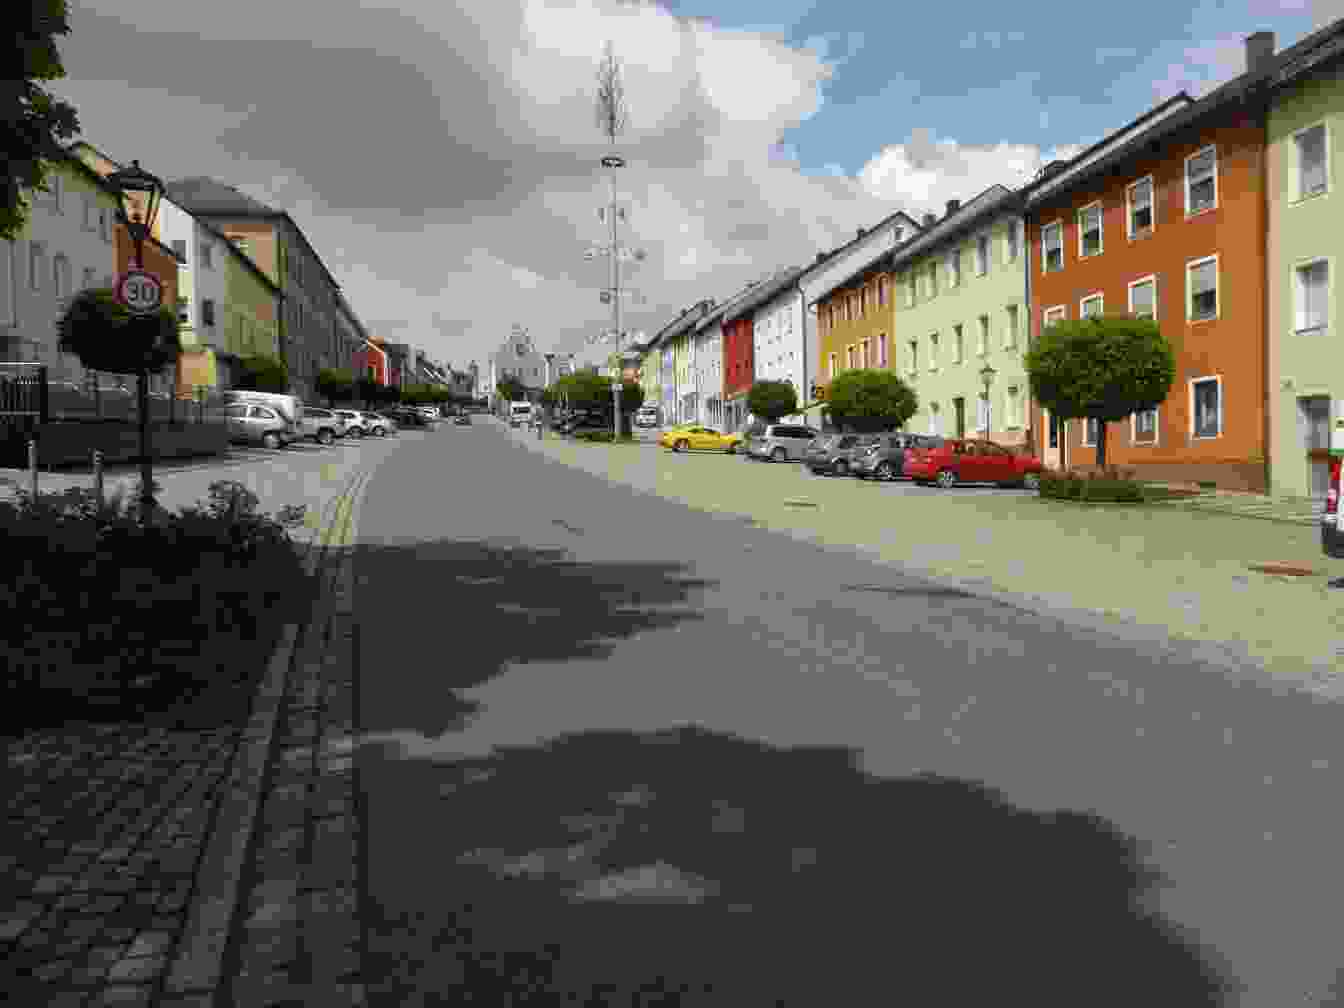 Bild der Stadt Eschenbach in der Oberpfalz